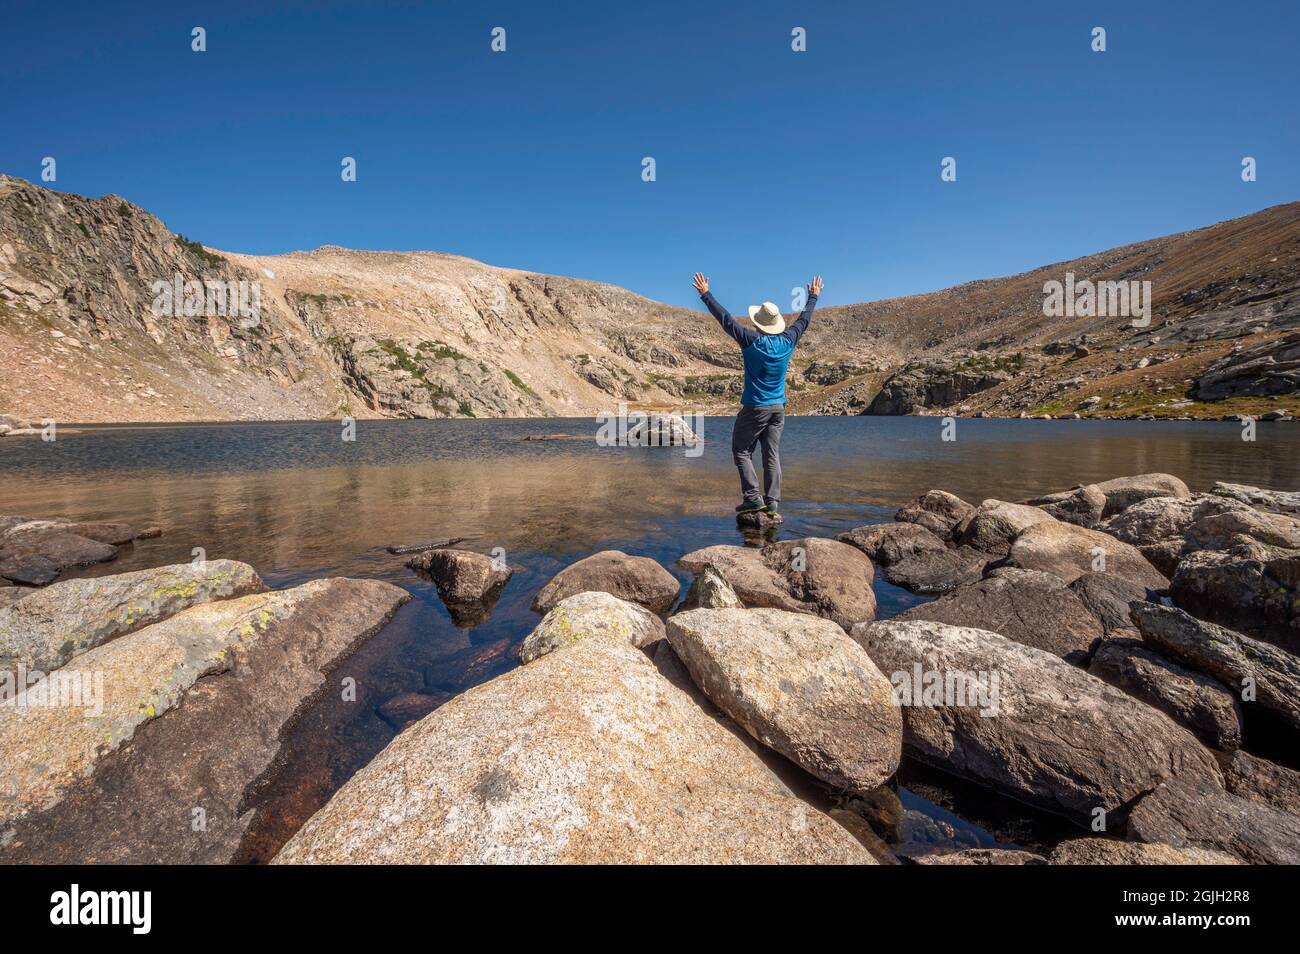 Un randonneur aventureux se dresse sur un petit rocher au lac Ptarmigan, un lac alpin isolé et moins visité dans le parc national des montagnes Rocheuses, Colorado, États-Unis Banque D'Images